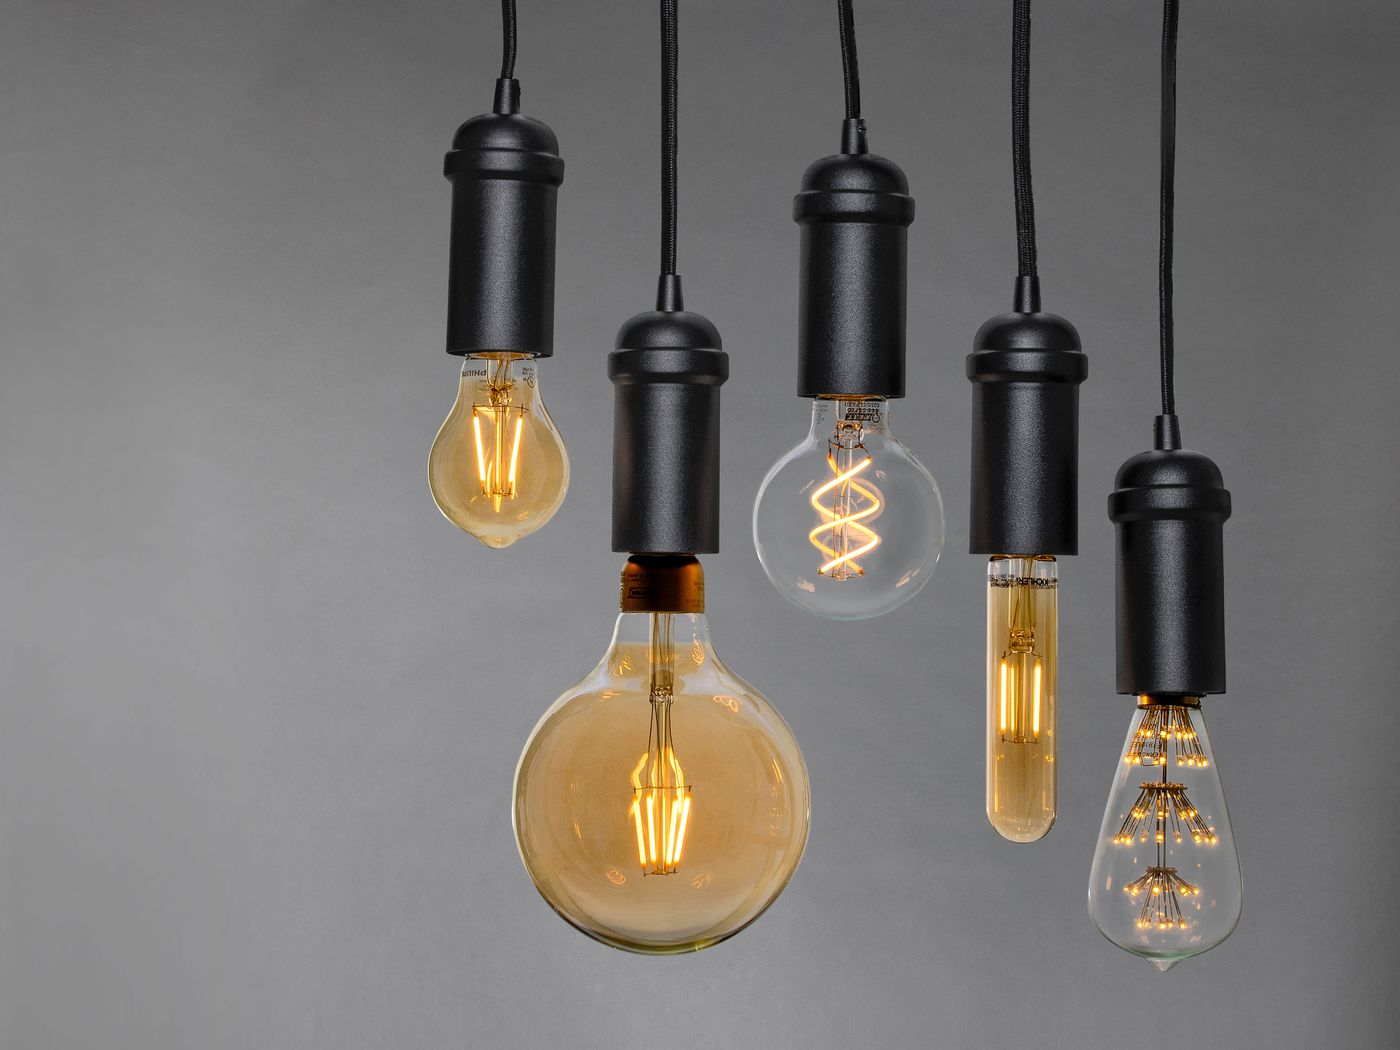 Thiết kế độc đáo và ưu điểm nổi bật của đèn Edison